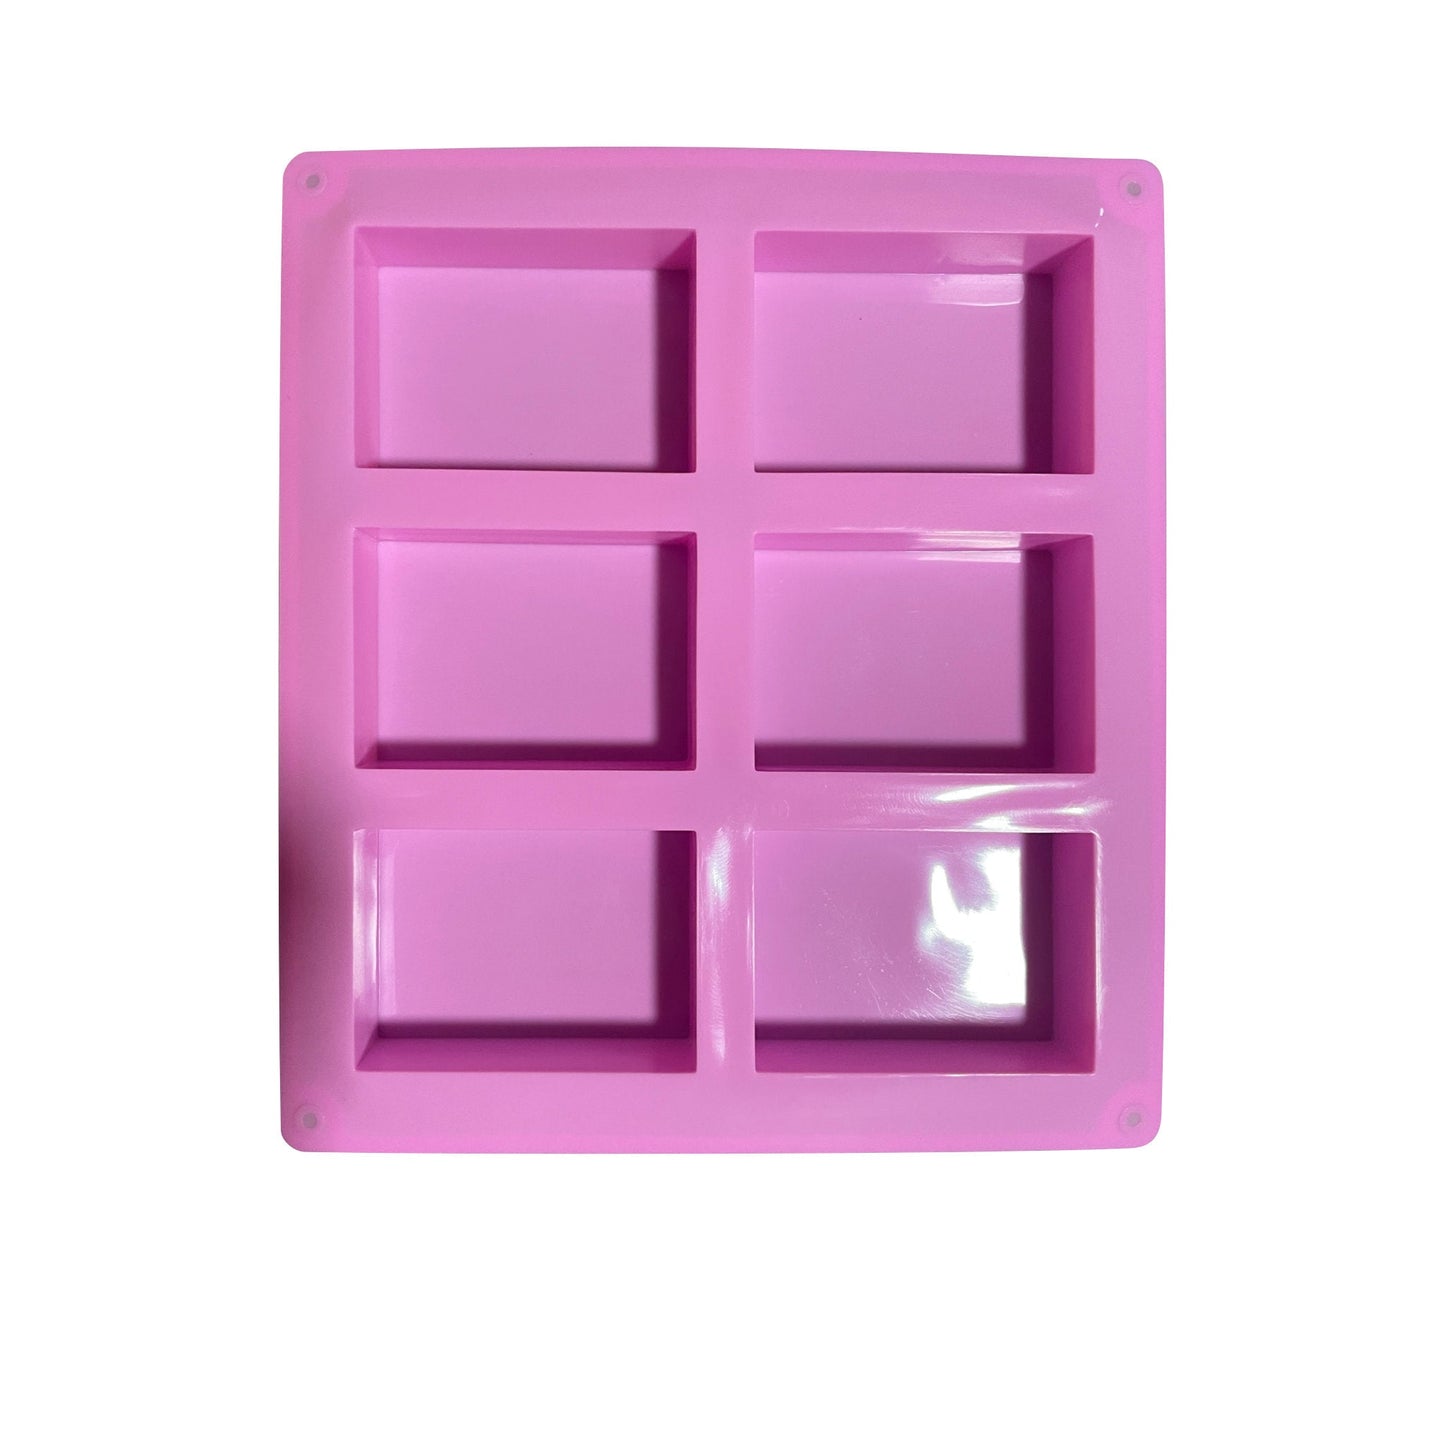 6 Cavity Silicone Square Mold